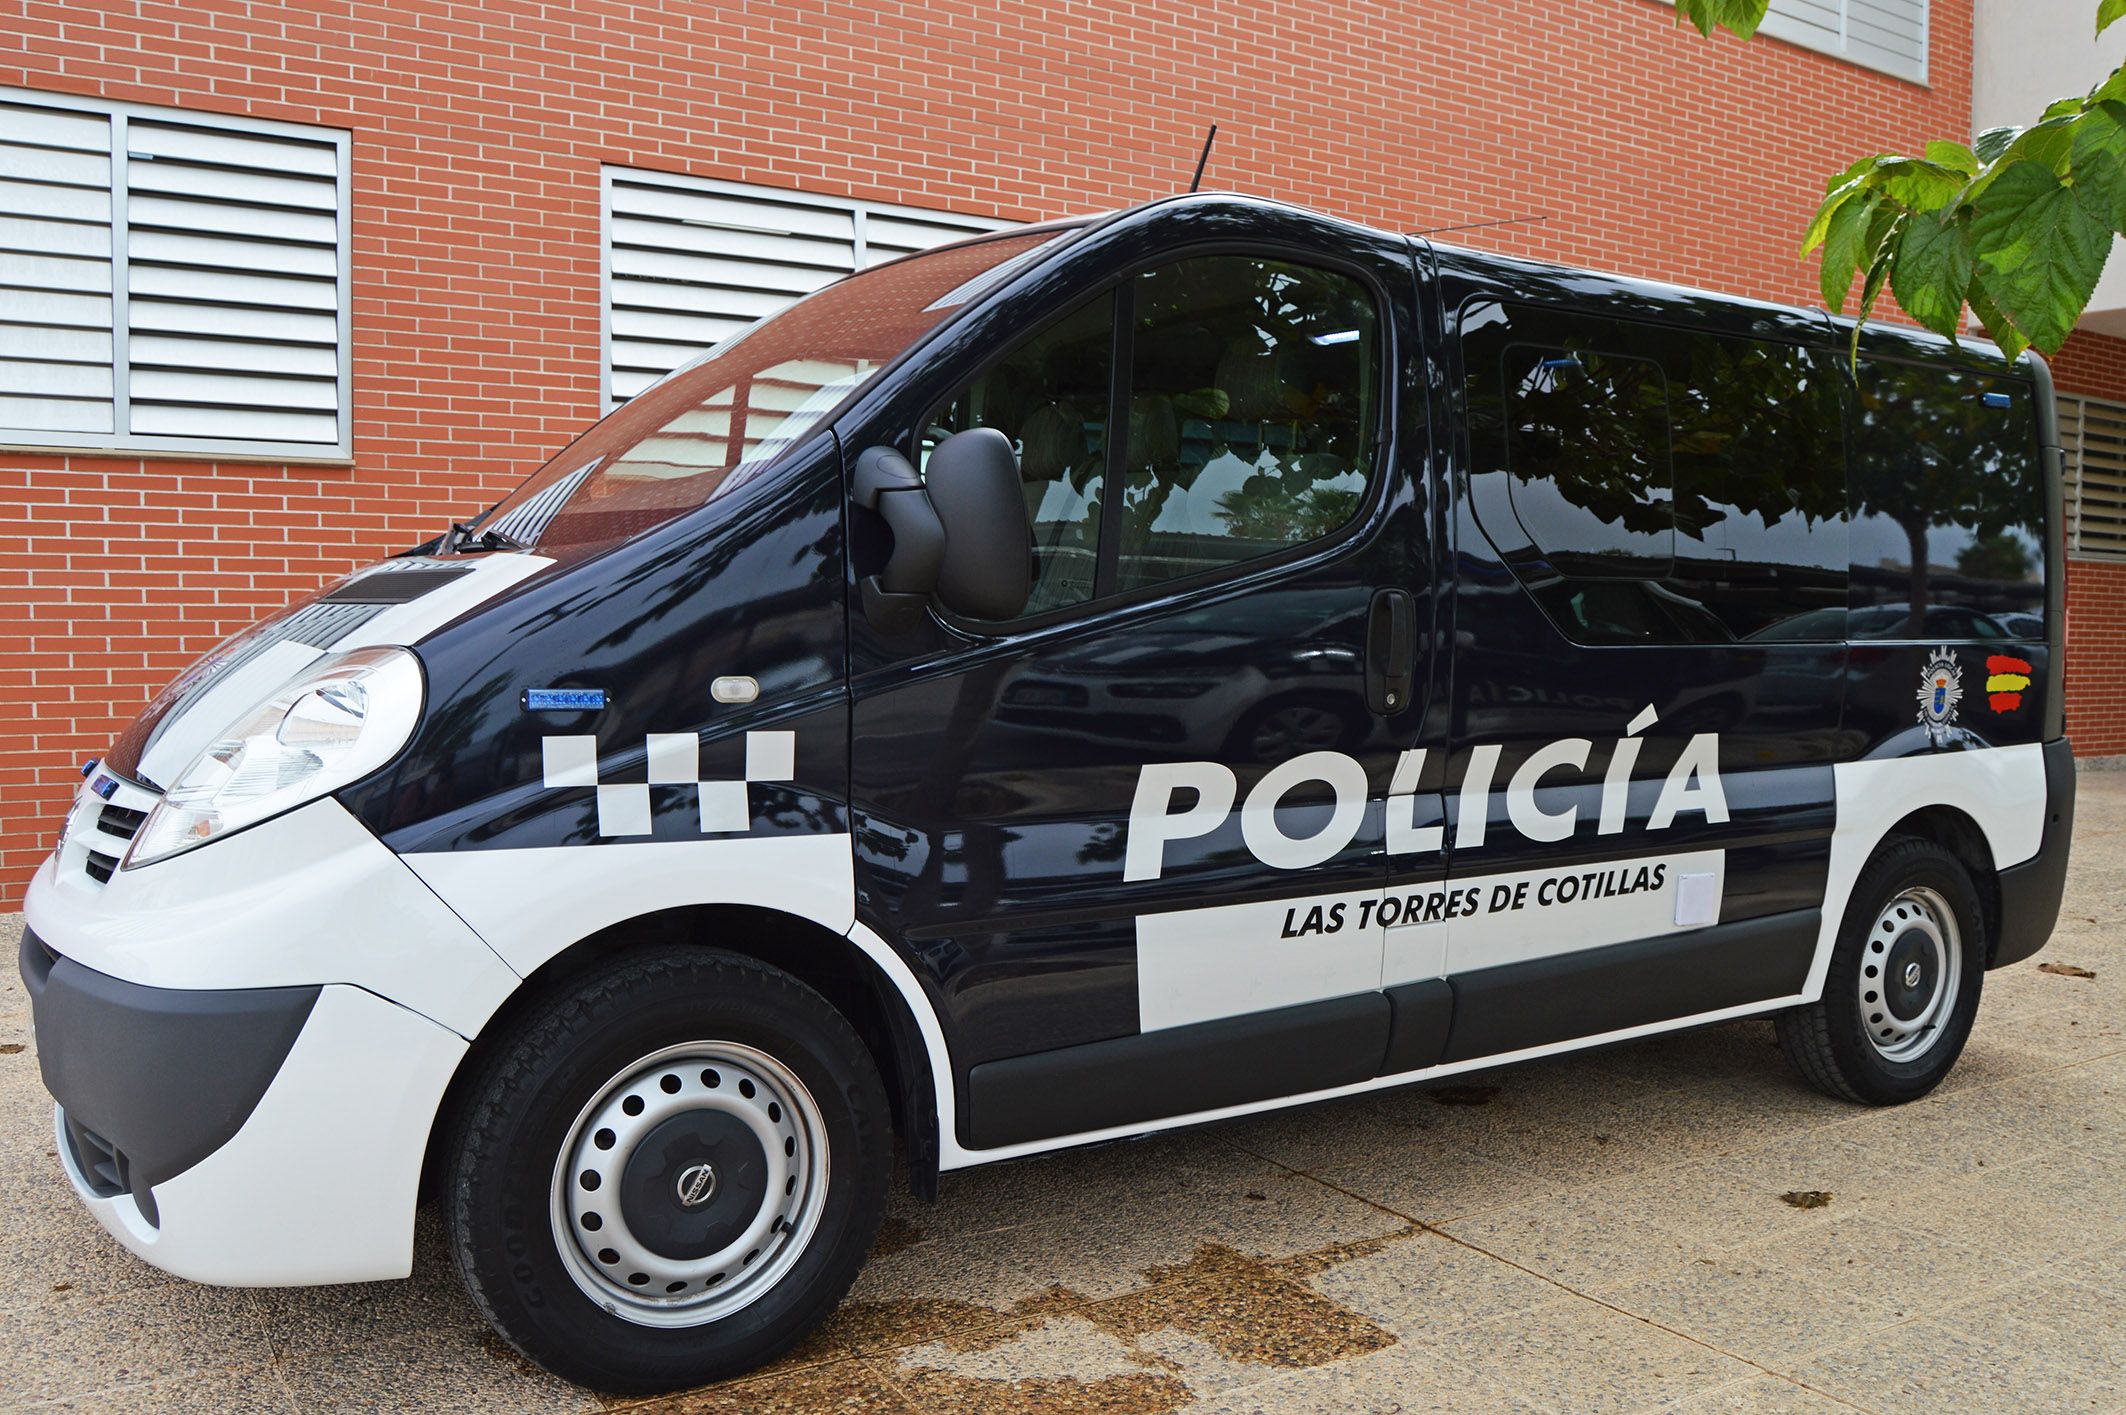 Una nueva furgoneta para el servicio de la Policía Local de Las Torres de Cotillas2